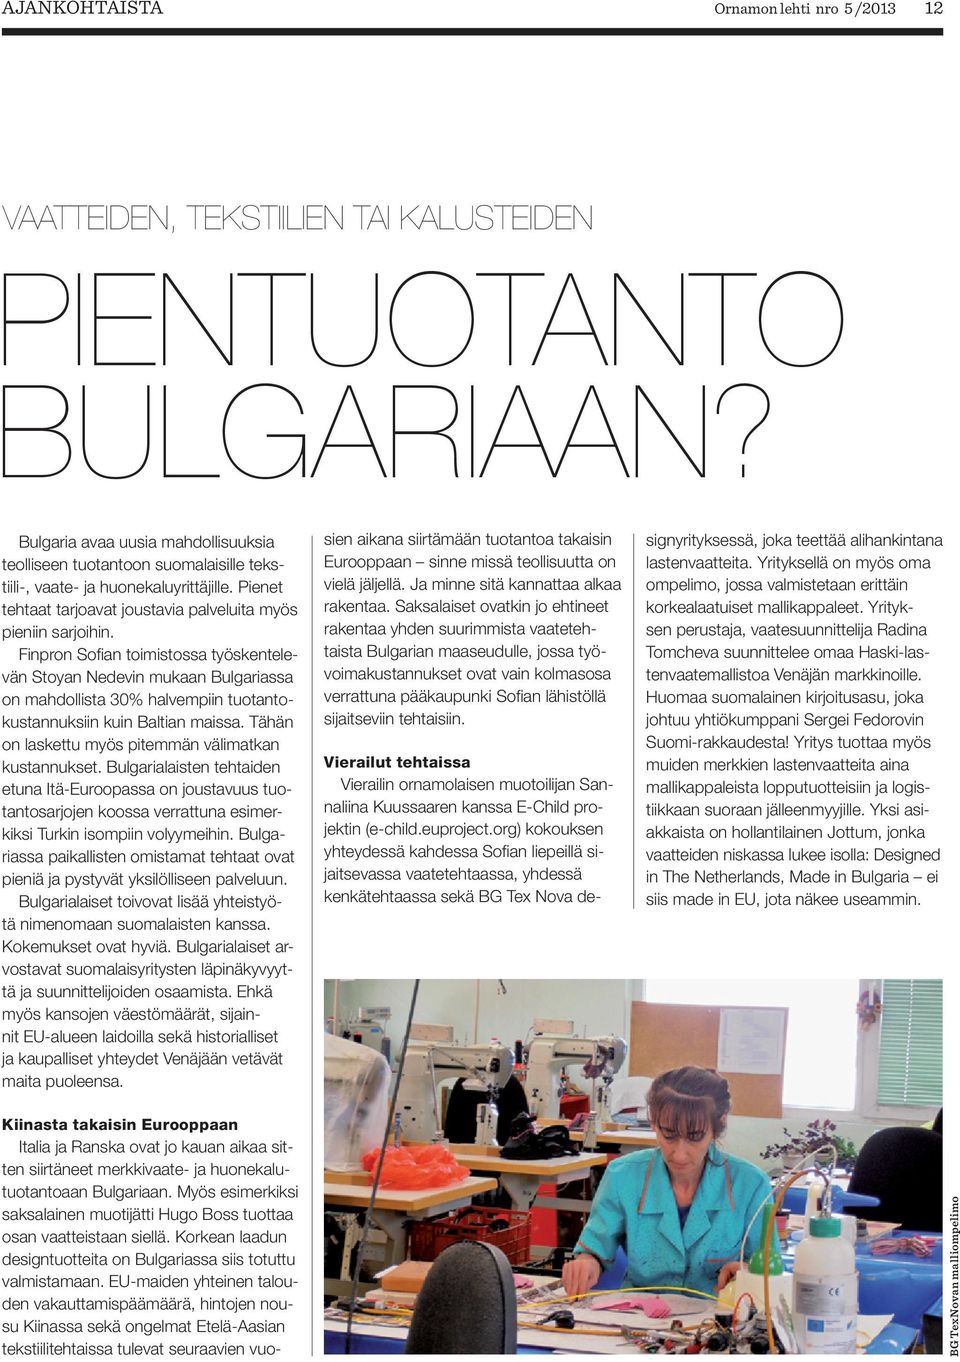 Finpron Sofian toimistossa työskentelevän Stoyan Nedevin mukaan Bulgariassa on mahdollista 30% halvempiin tuotantokustannuksiin kuin Baltian maissa.